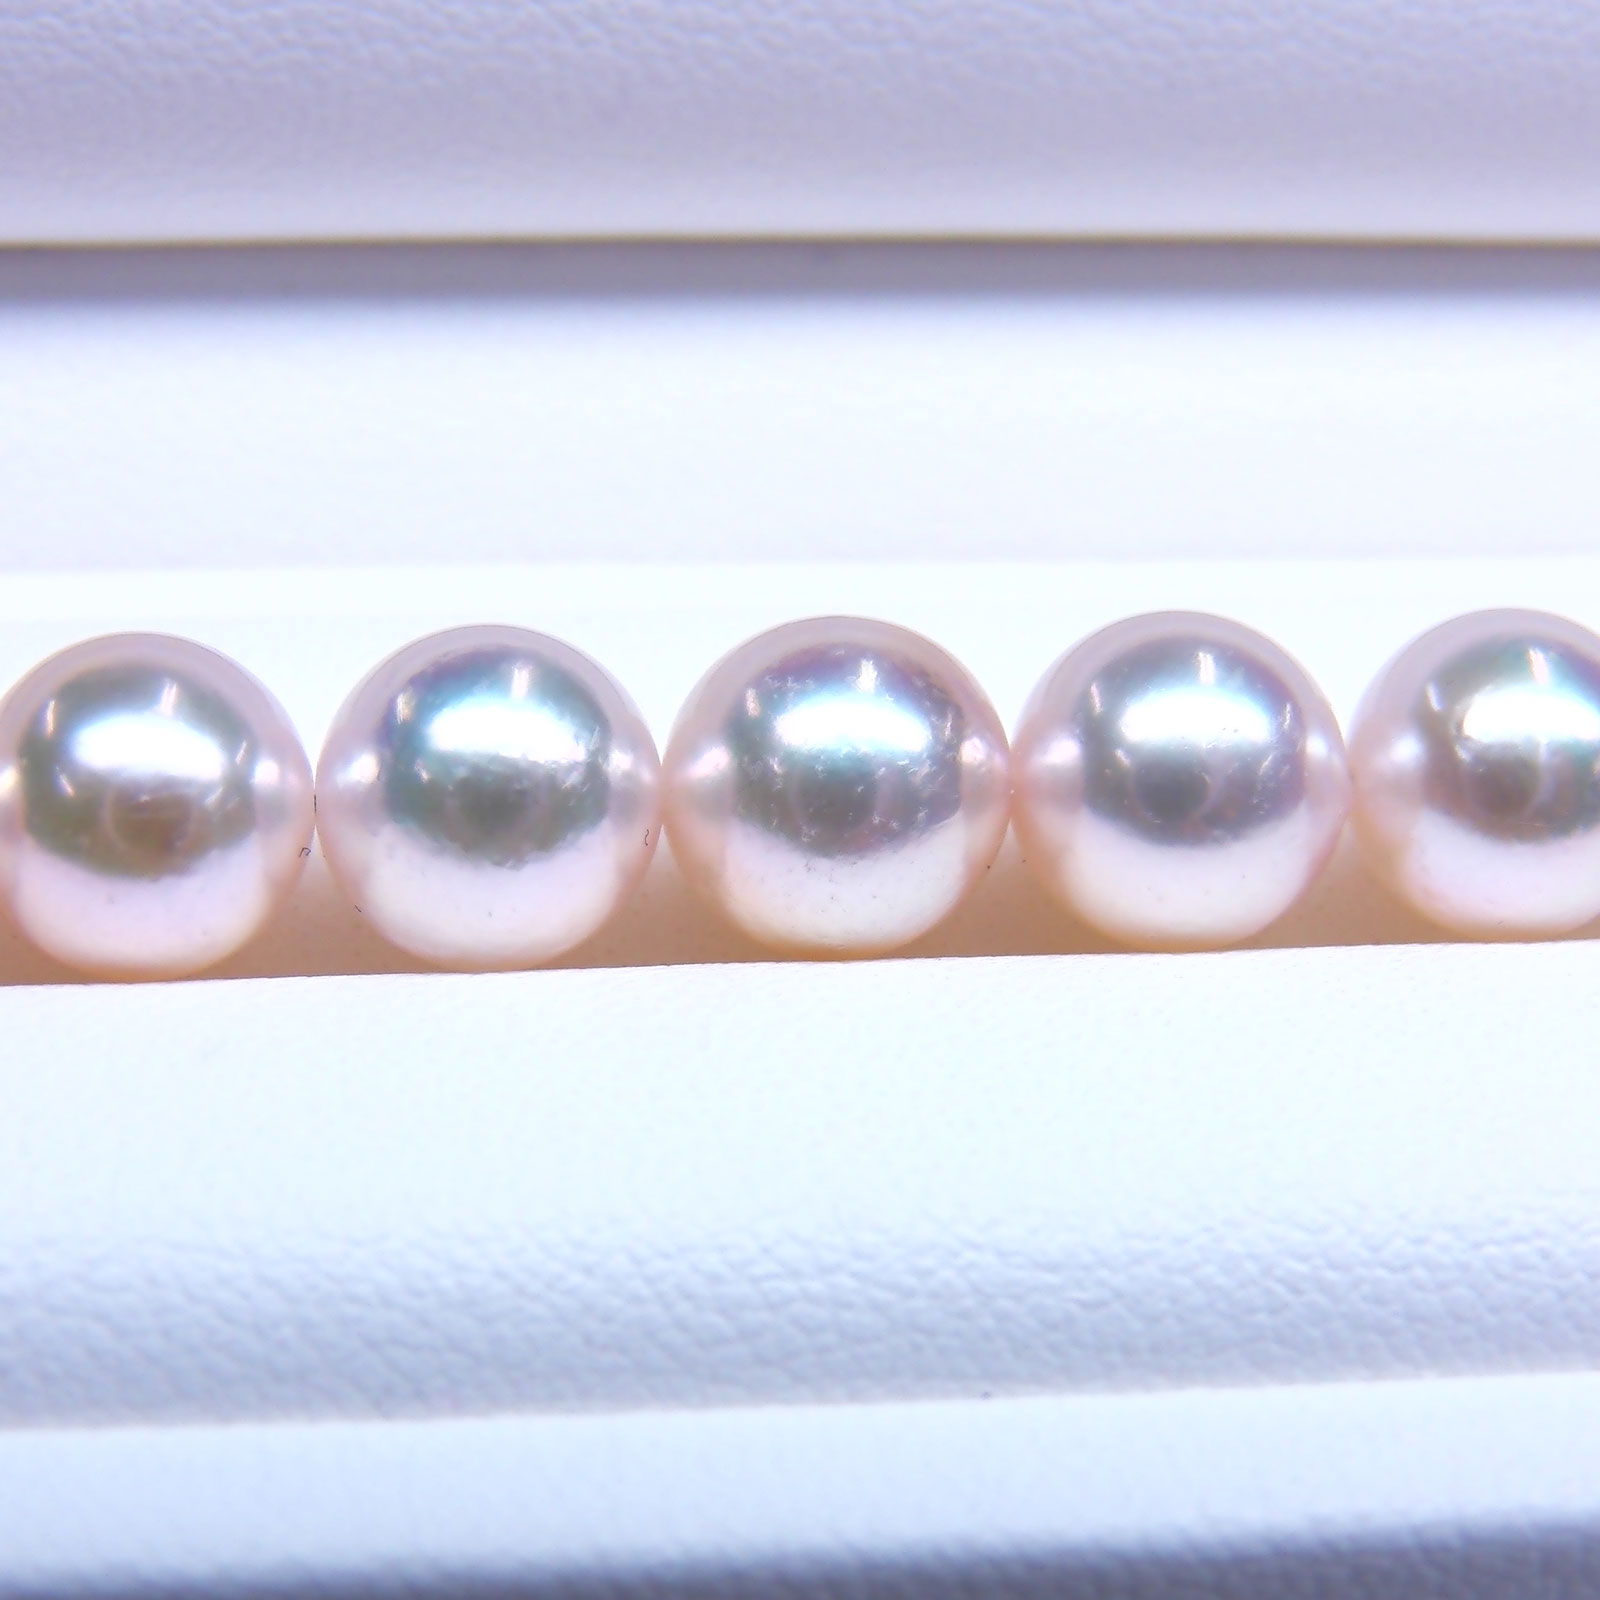 《真珠大卸からの直販》■テリ評価90点・理想的な白色高級真珠の品質バランス■越物花珠真珠ネックレス[純白ホワイト系グリーンピンク]7.5-8mm【送料無料】